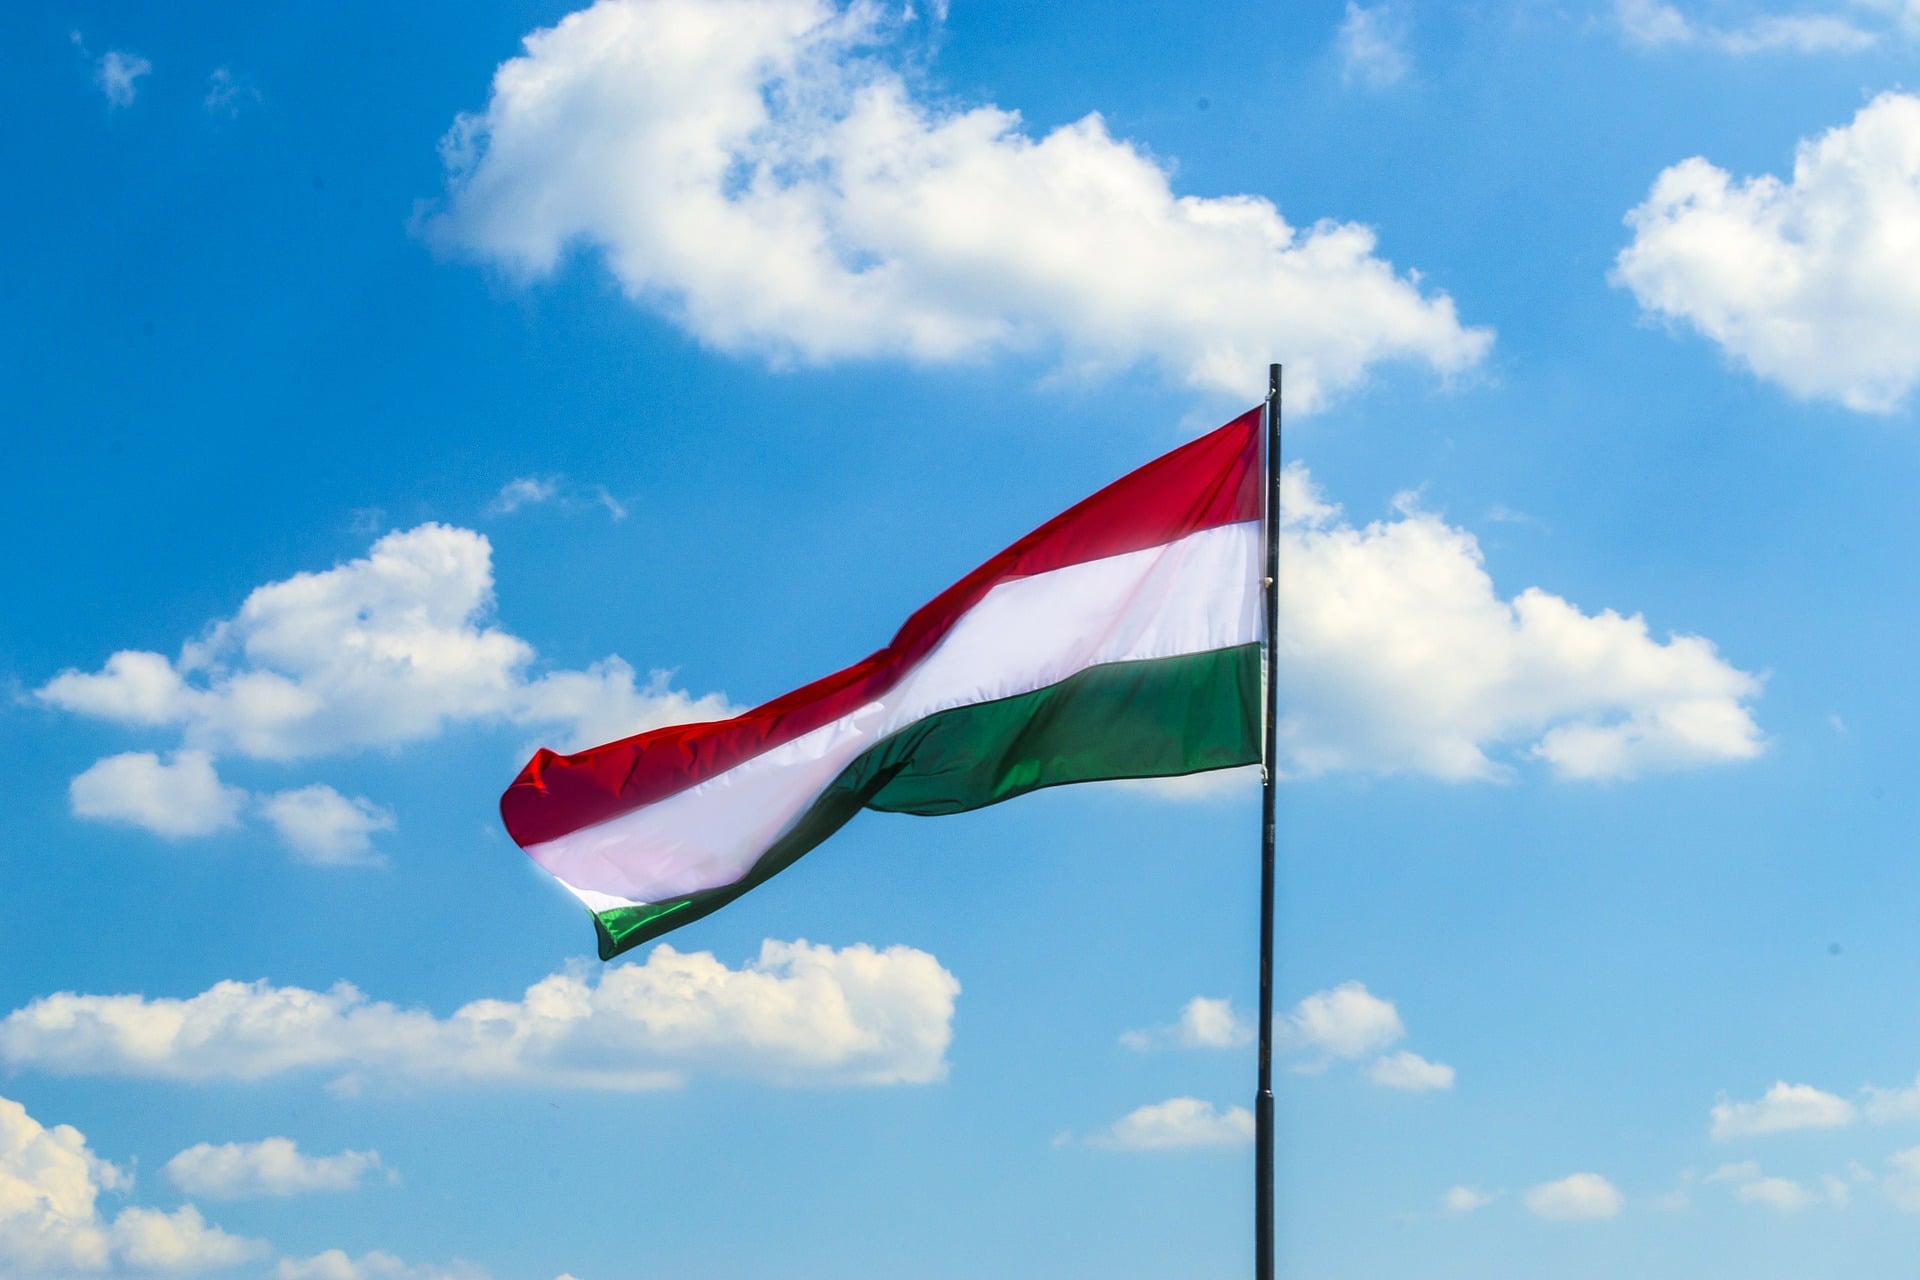 Ухвалено Угоду щодо взаємного визнання документів про освіту та наукові ступені між Україною та Угорщиною